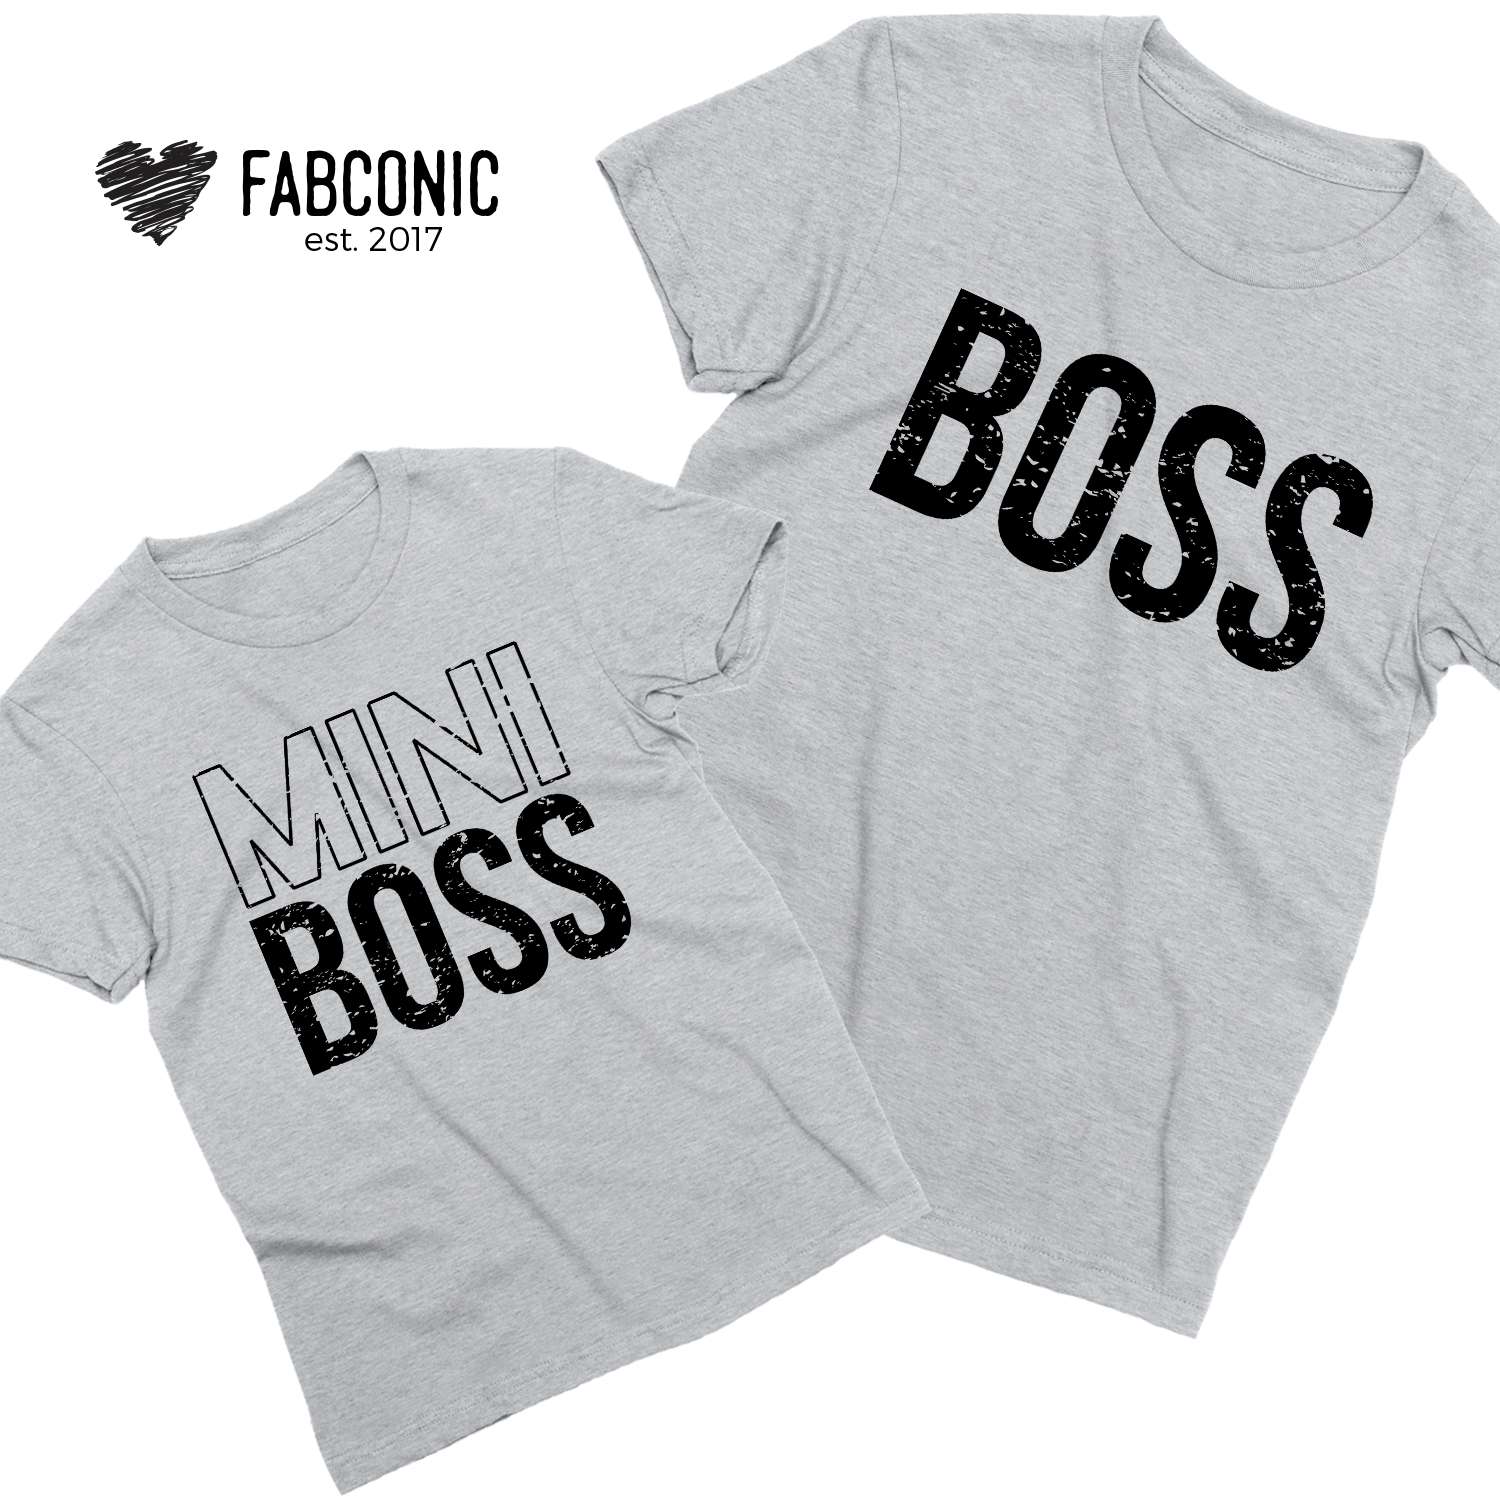 mini boss shirt